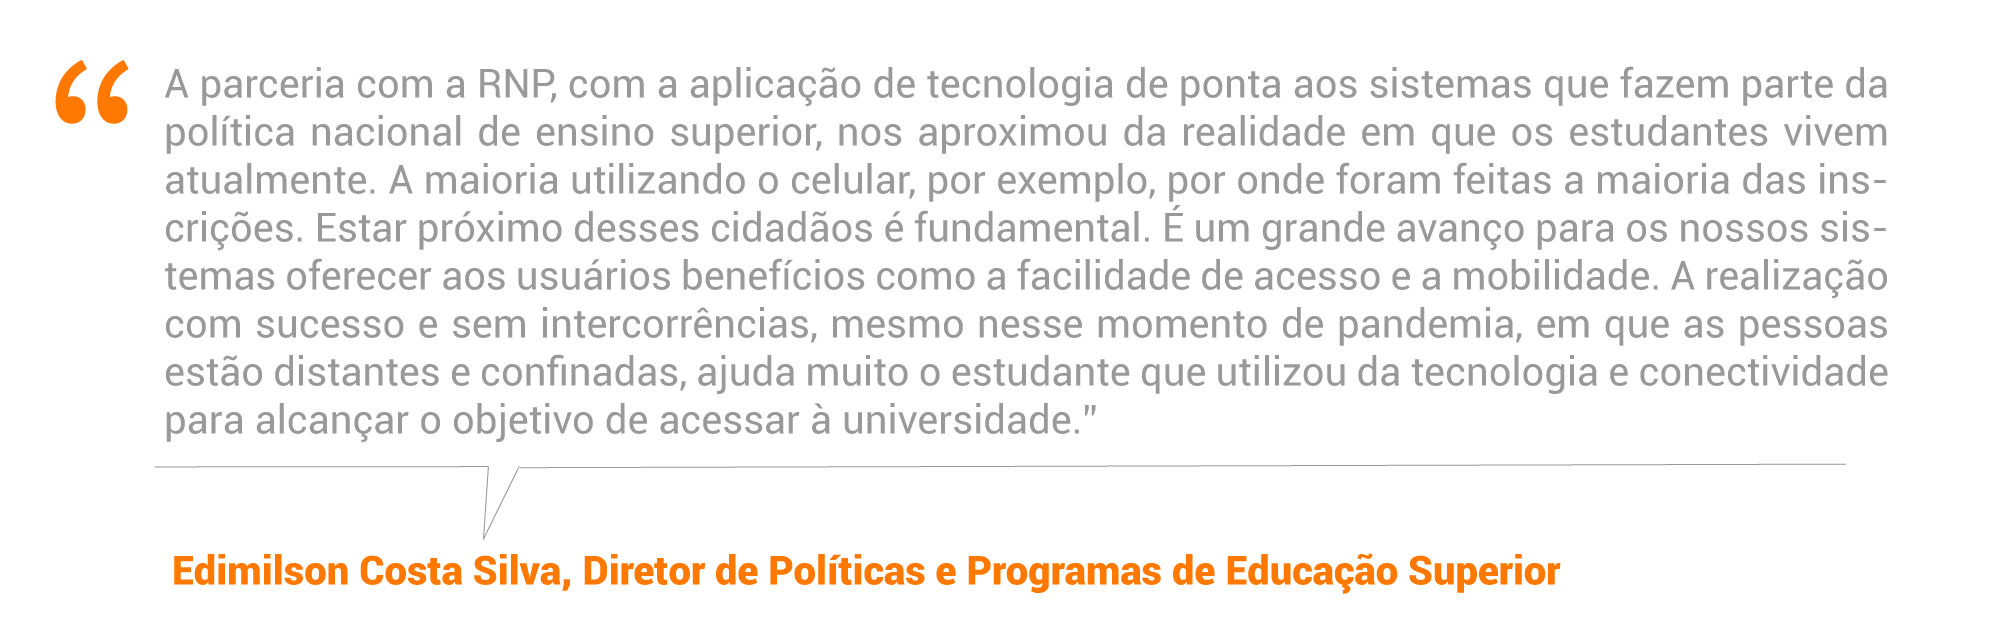 Edimilson Costa Silva, diretor de Políticas e Programas de Educação Superior